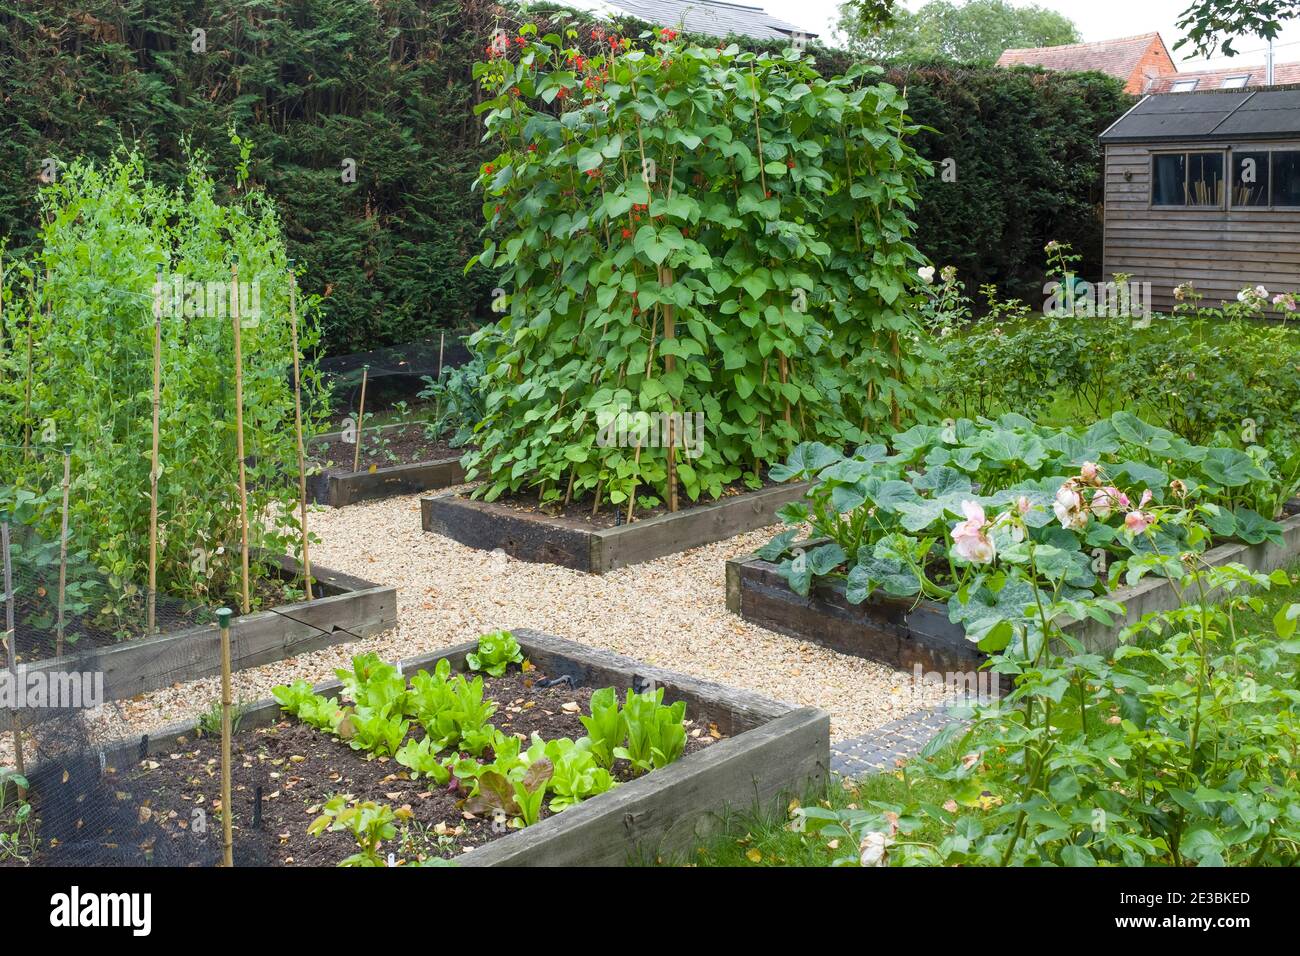 Gemüse wächst in einem großen Gemüsebeet in einem Garten in England, Großbritannien Stockfoto